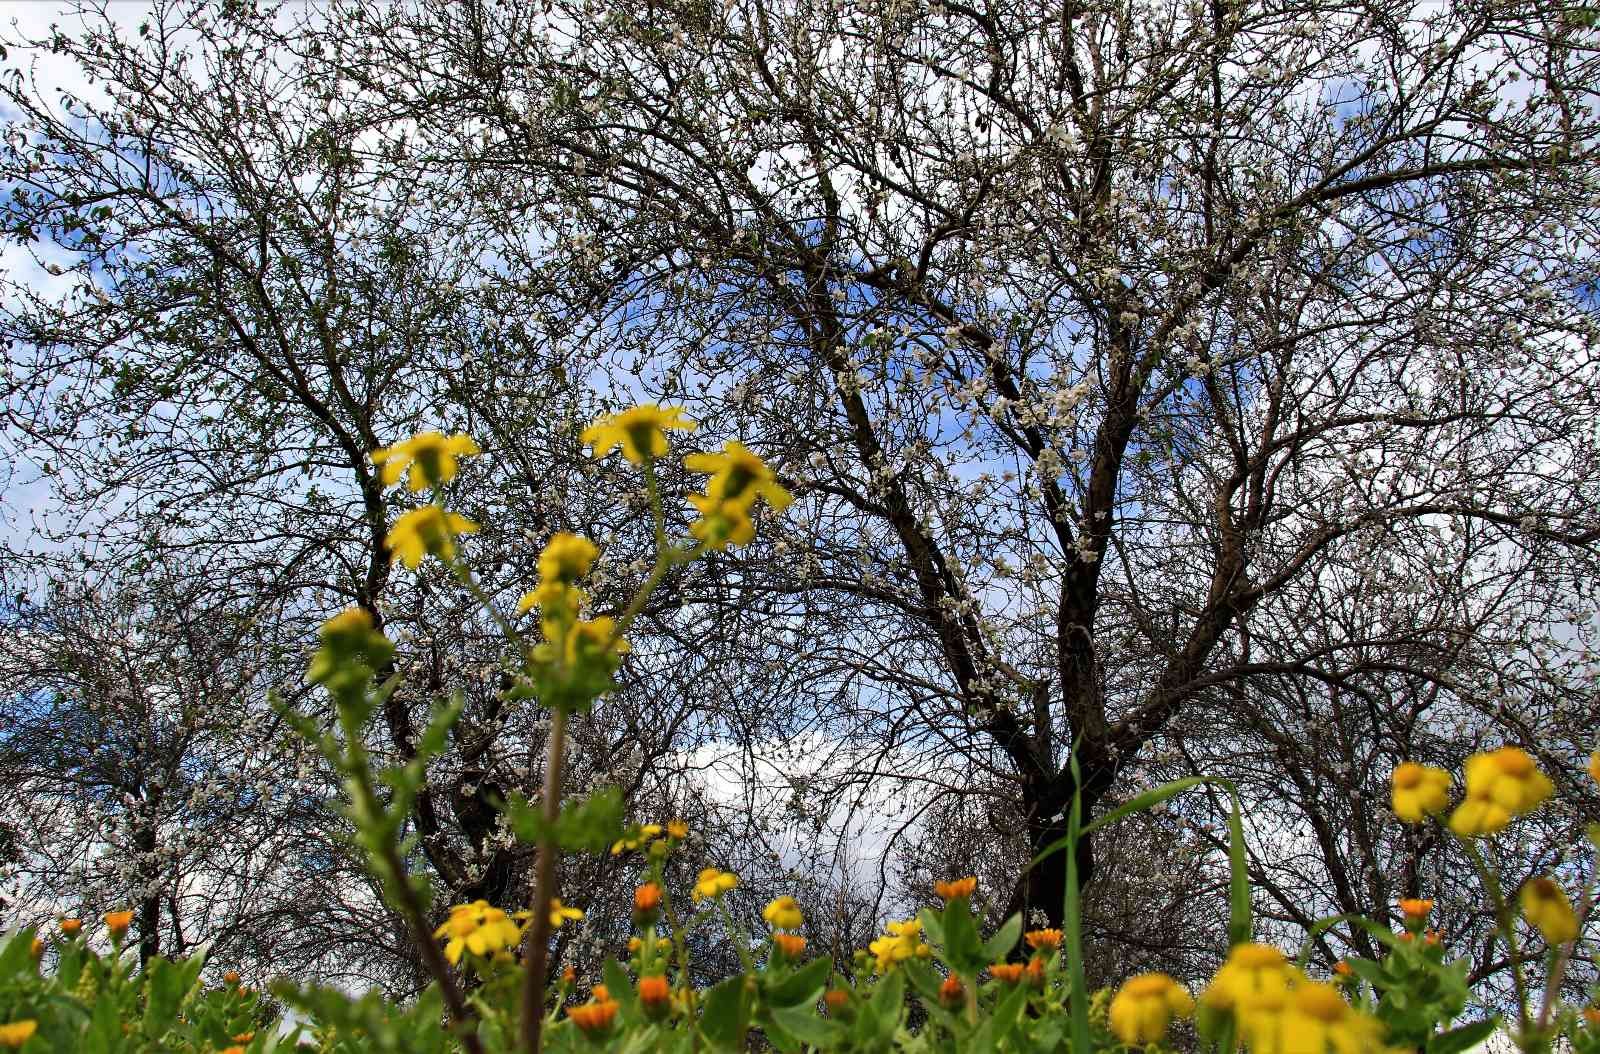 Mersin’de bahar havası... Badem ağaçları çiçek açtı #mersin